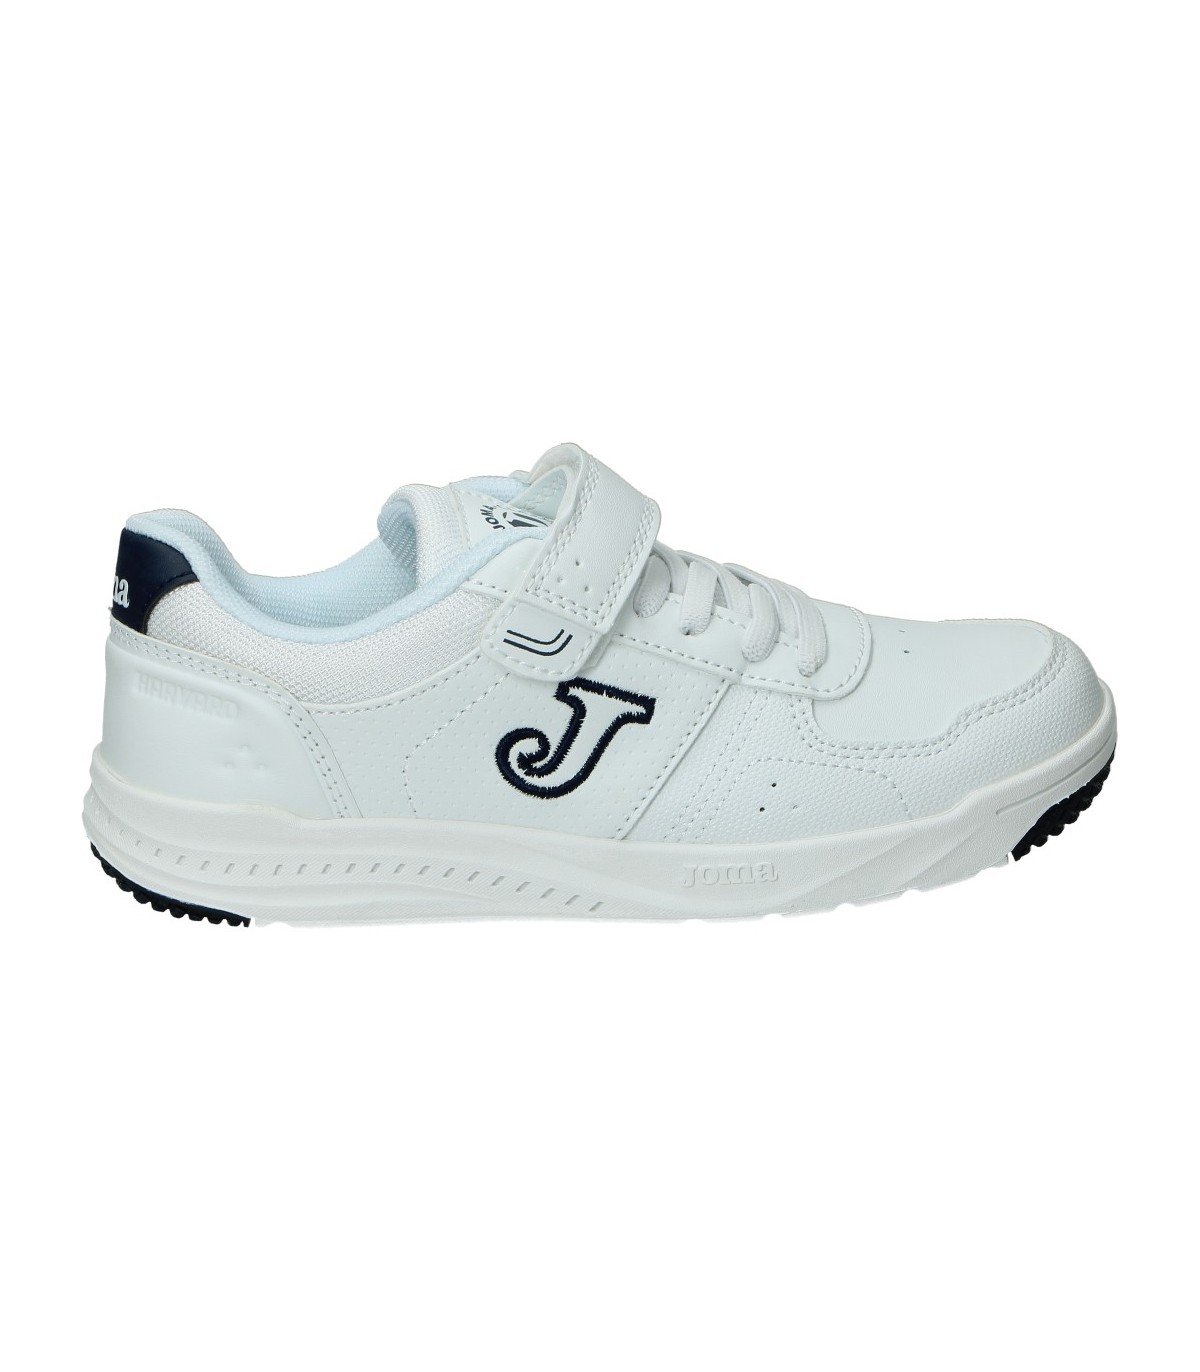 Zapatillas deportivas para niño plana JOMA wharw2203v en blanco